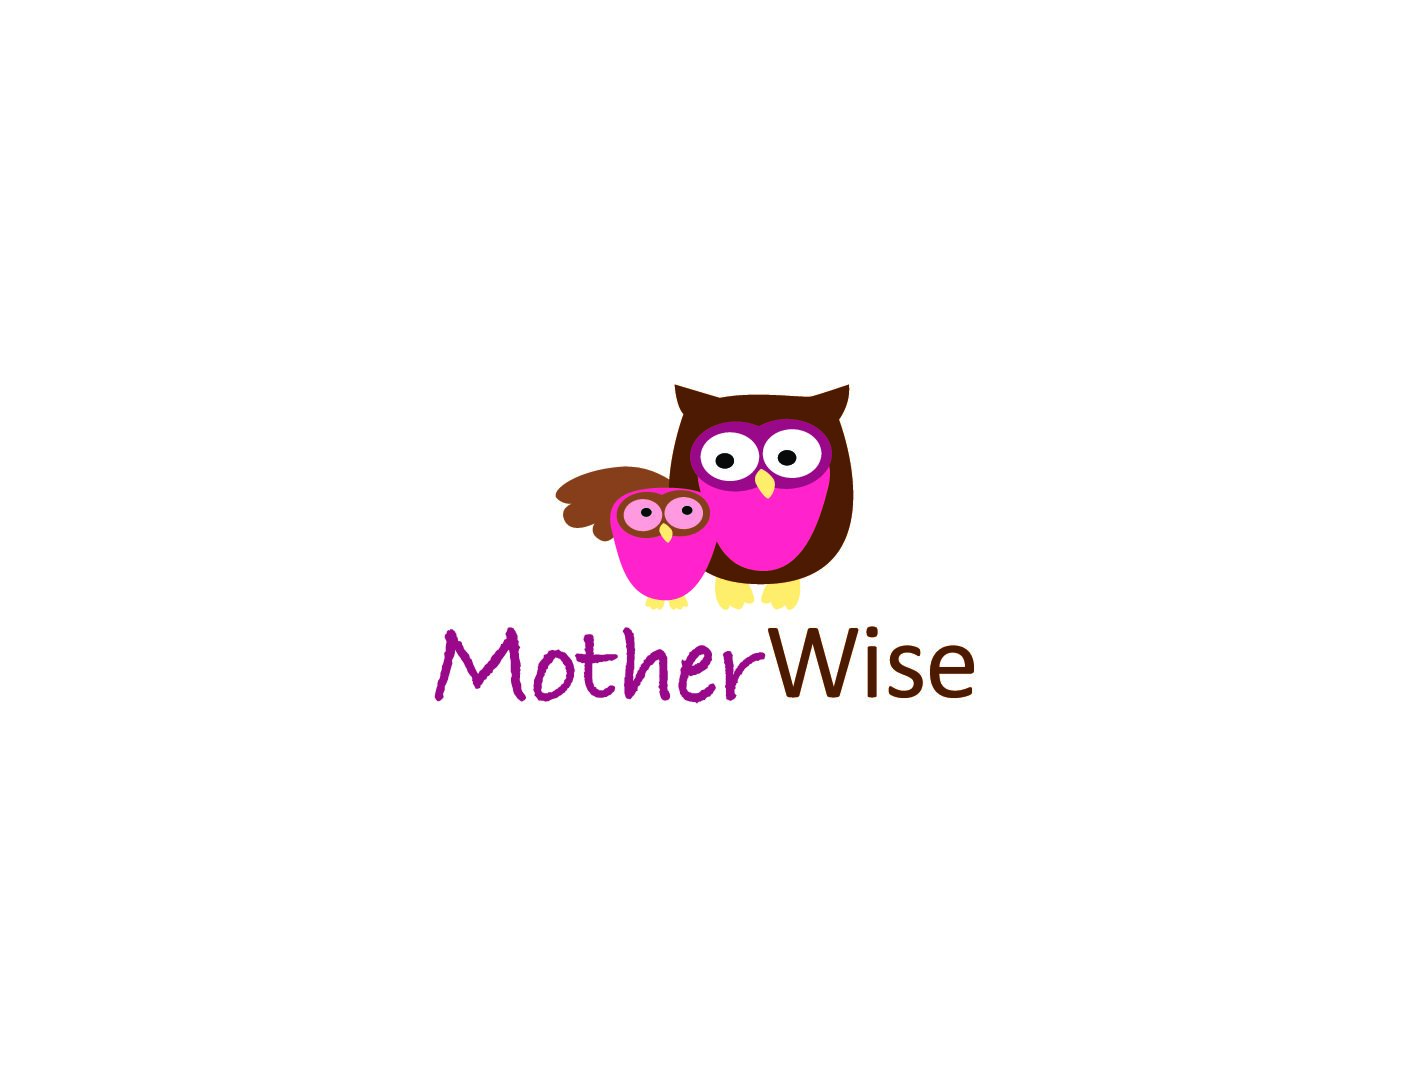 Programas para madres embarazadas y puérperas - Motherwise